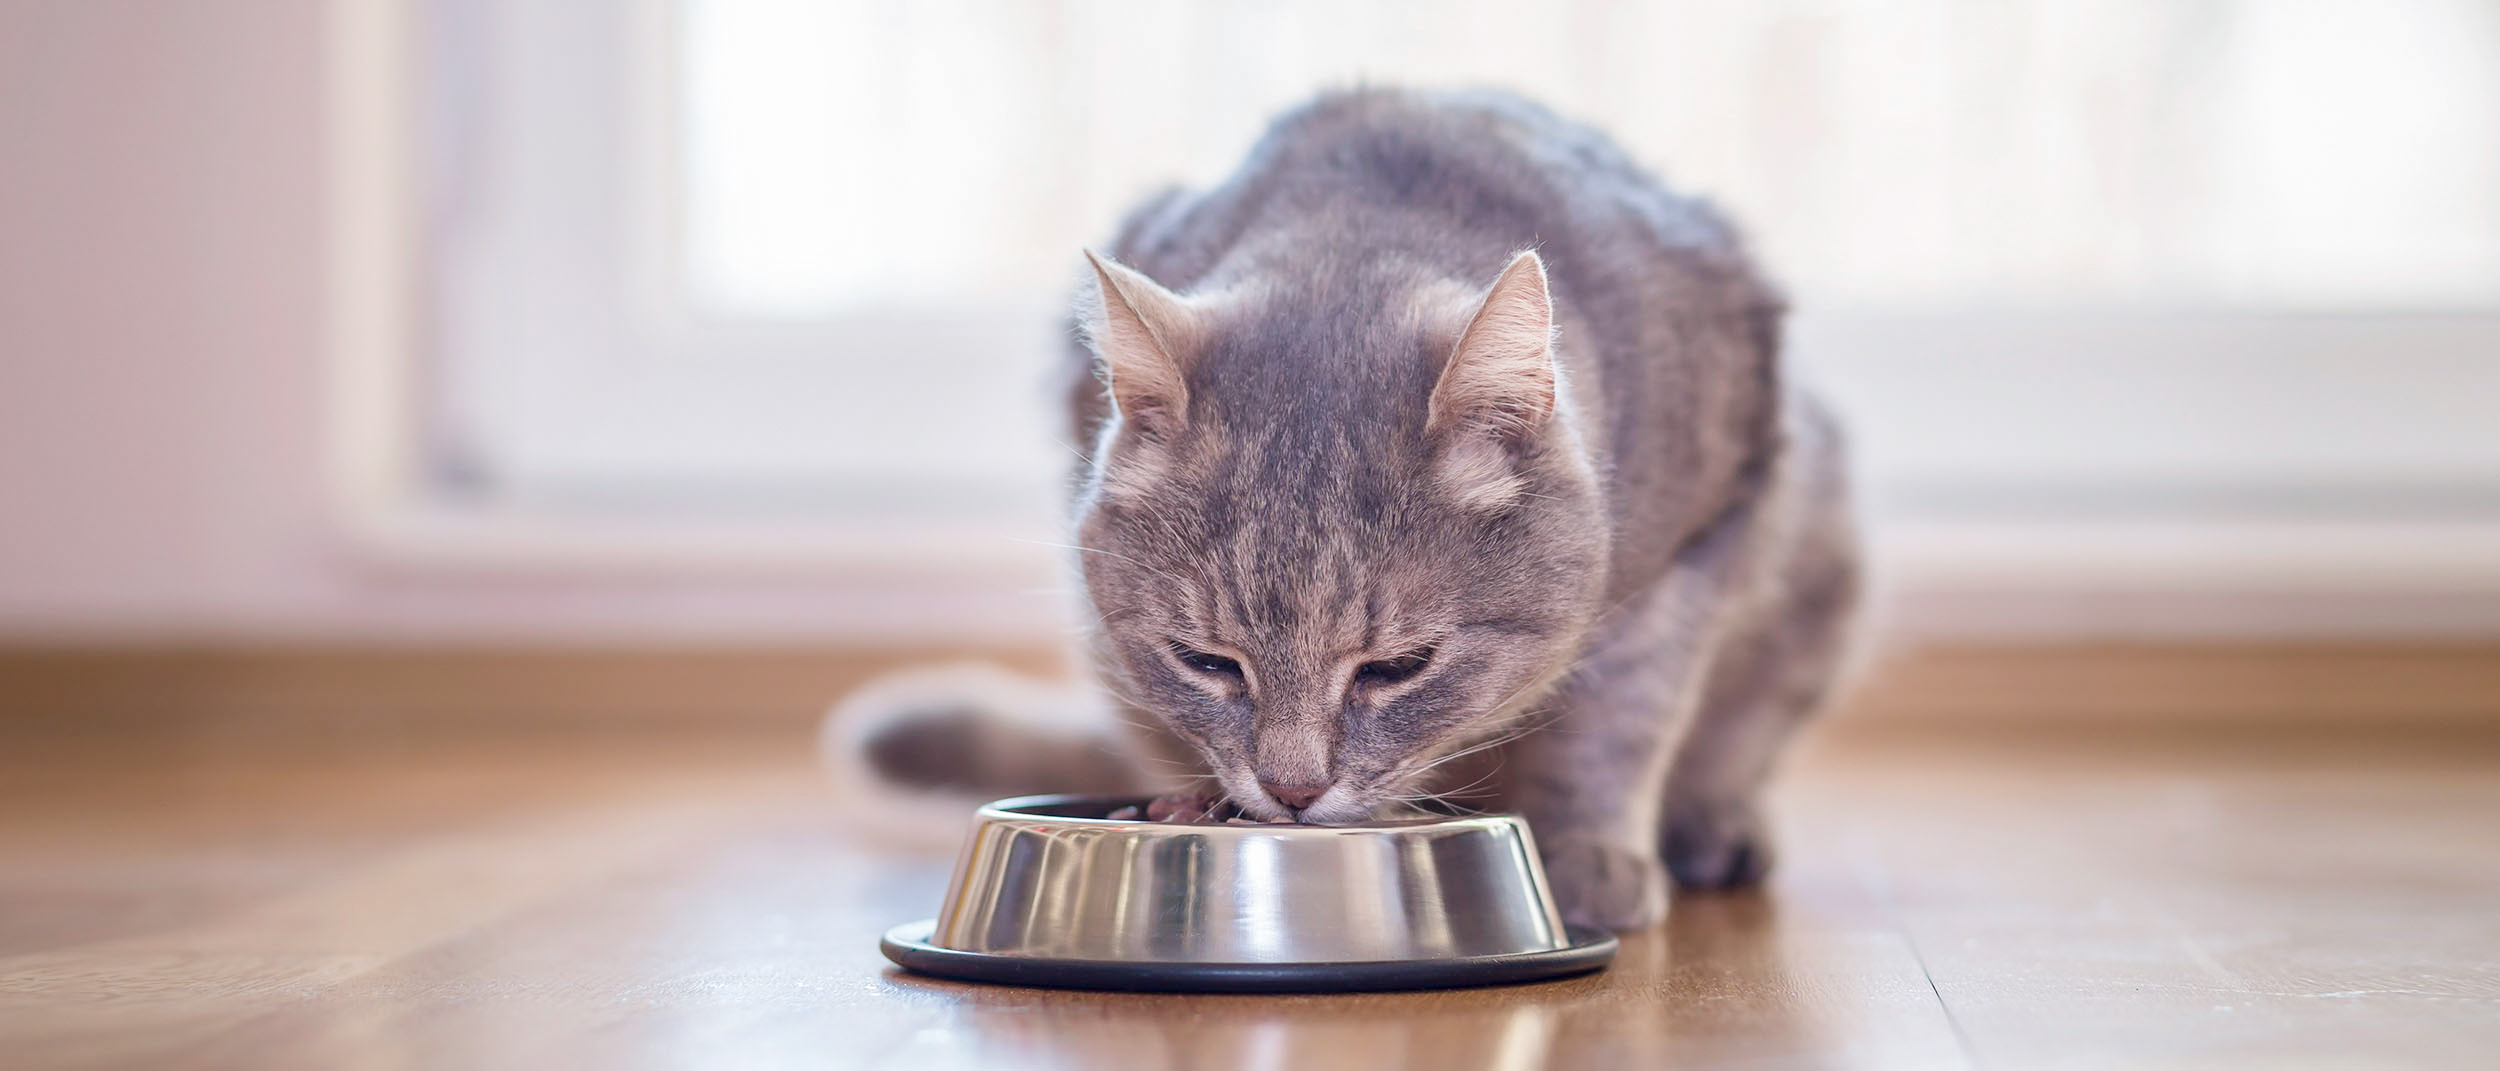 Дорослий кіт сидить у приміщенні та їсть зі сріблястої миски.